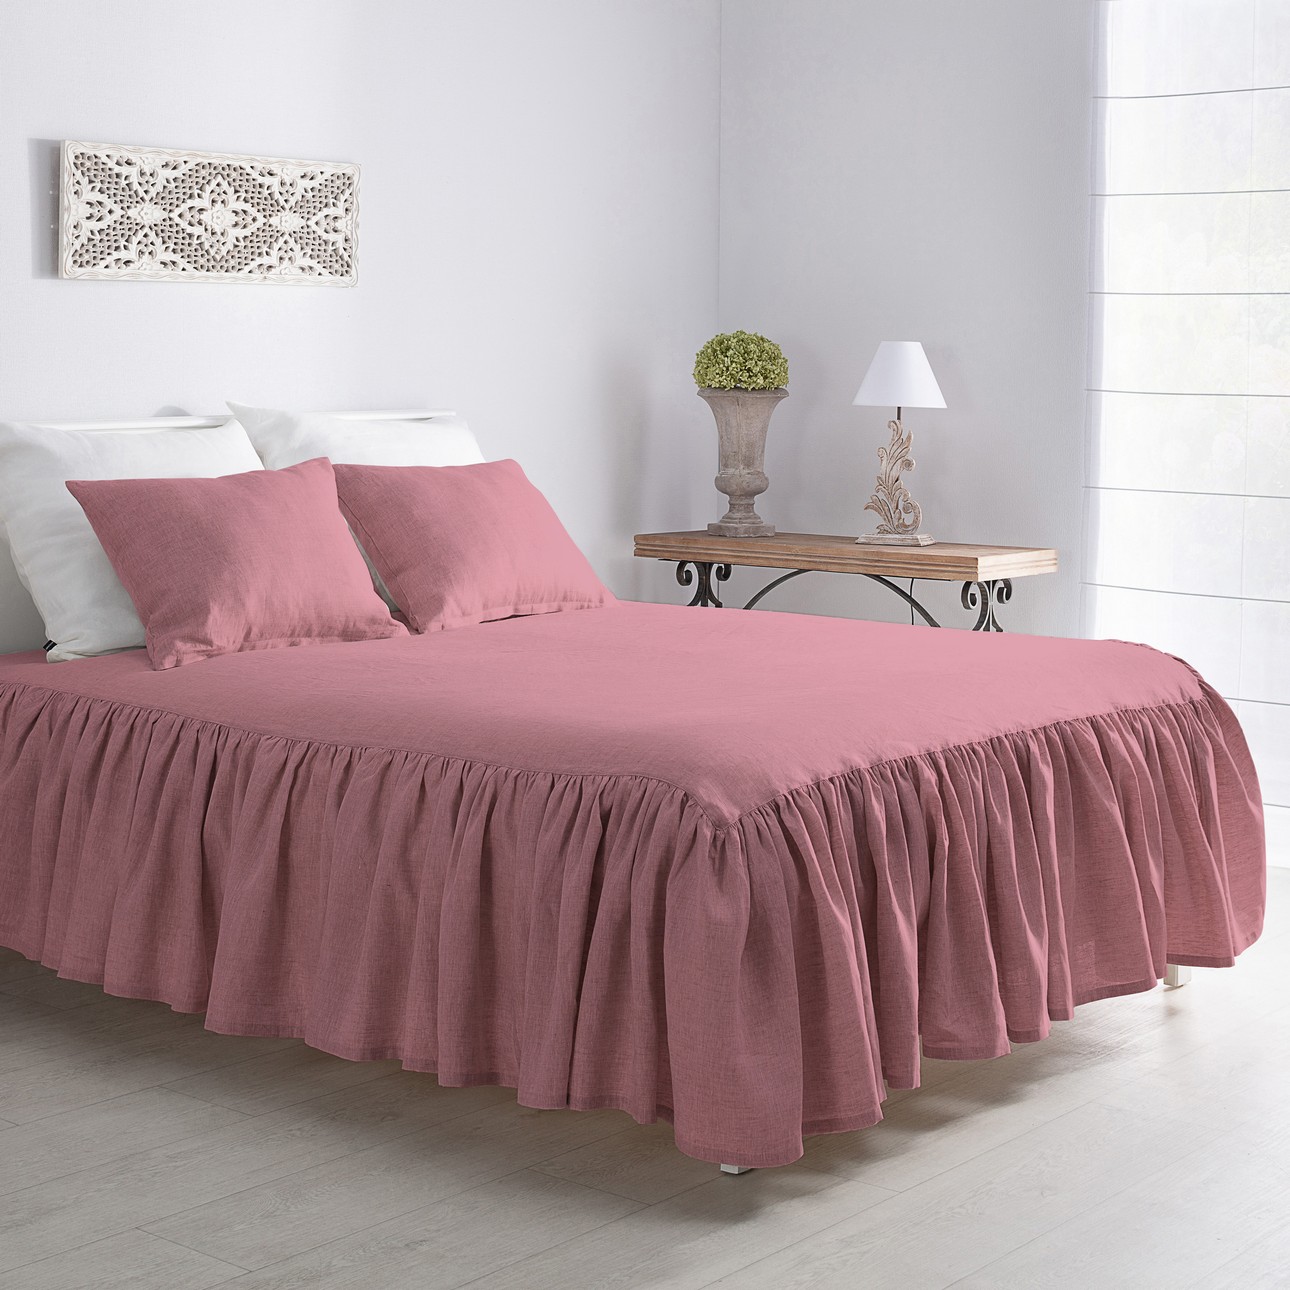 E-shop Dekoria Prehoz Linen Frilly 160x210cm ružový, 160 x 210 CM